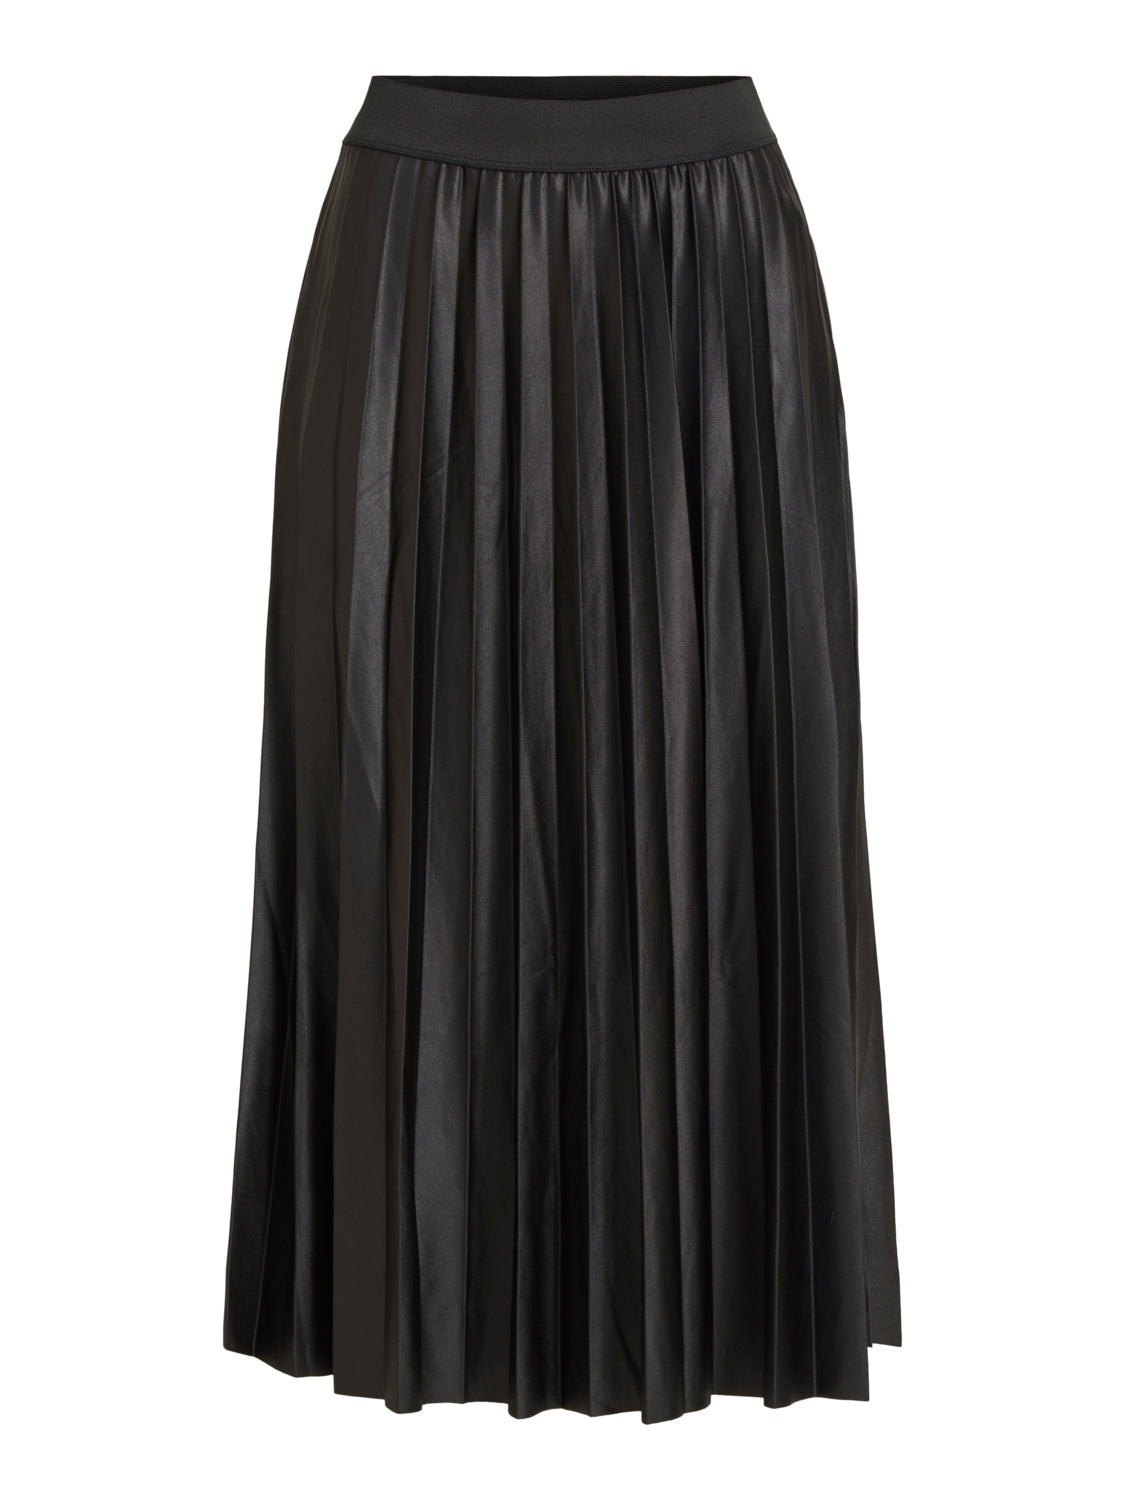 VINITBAN Skirt - black